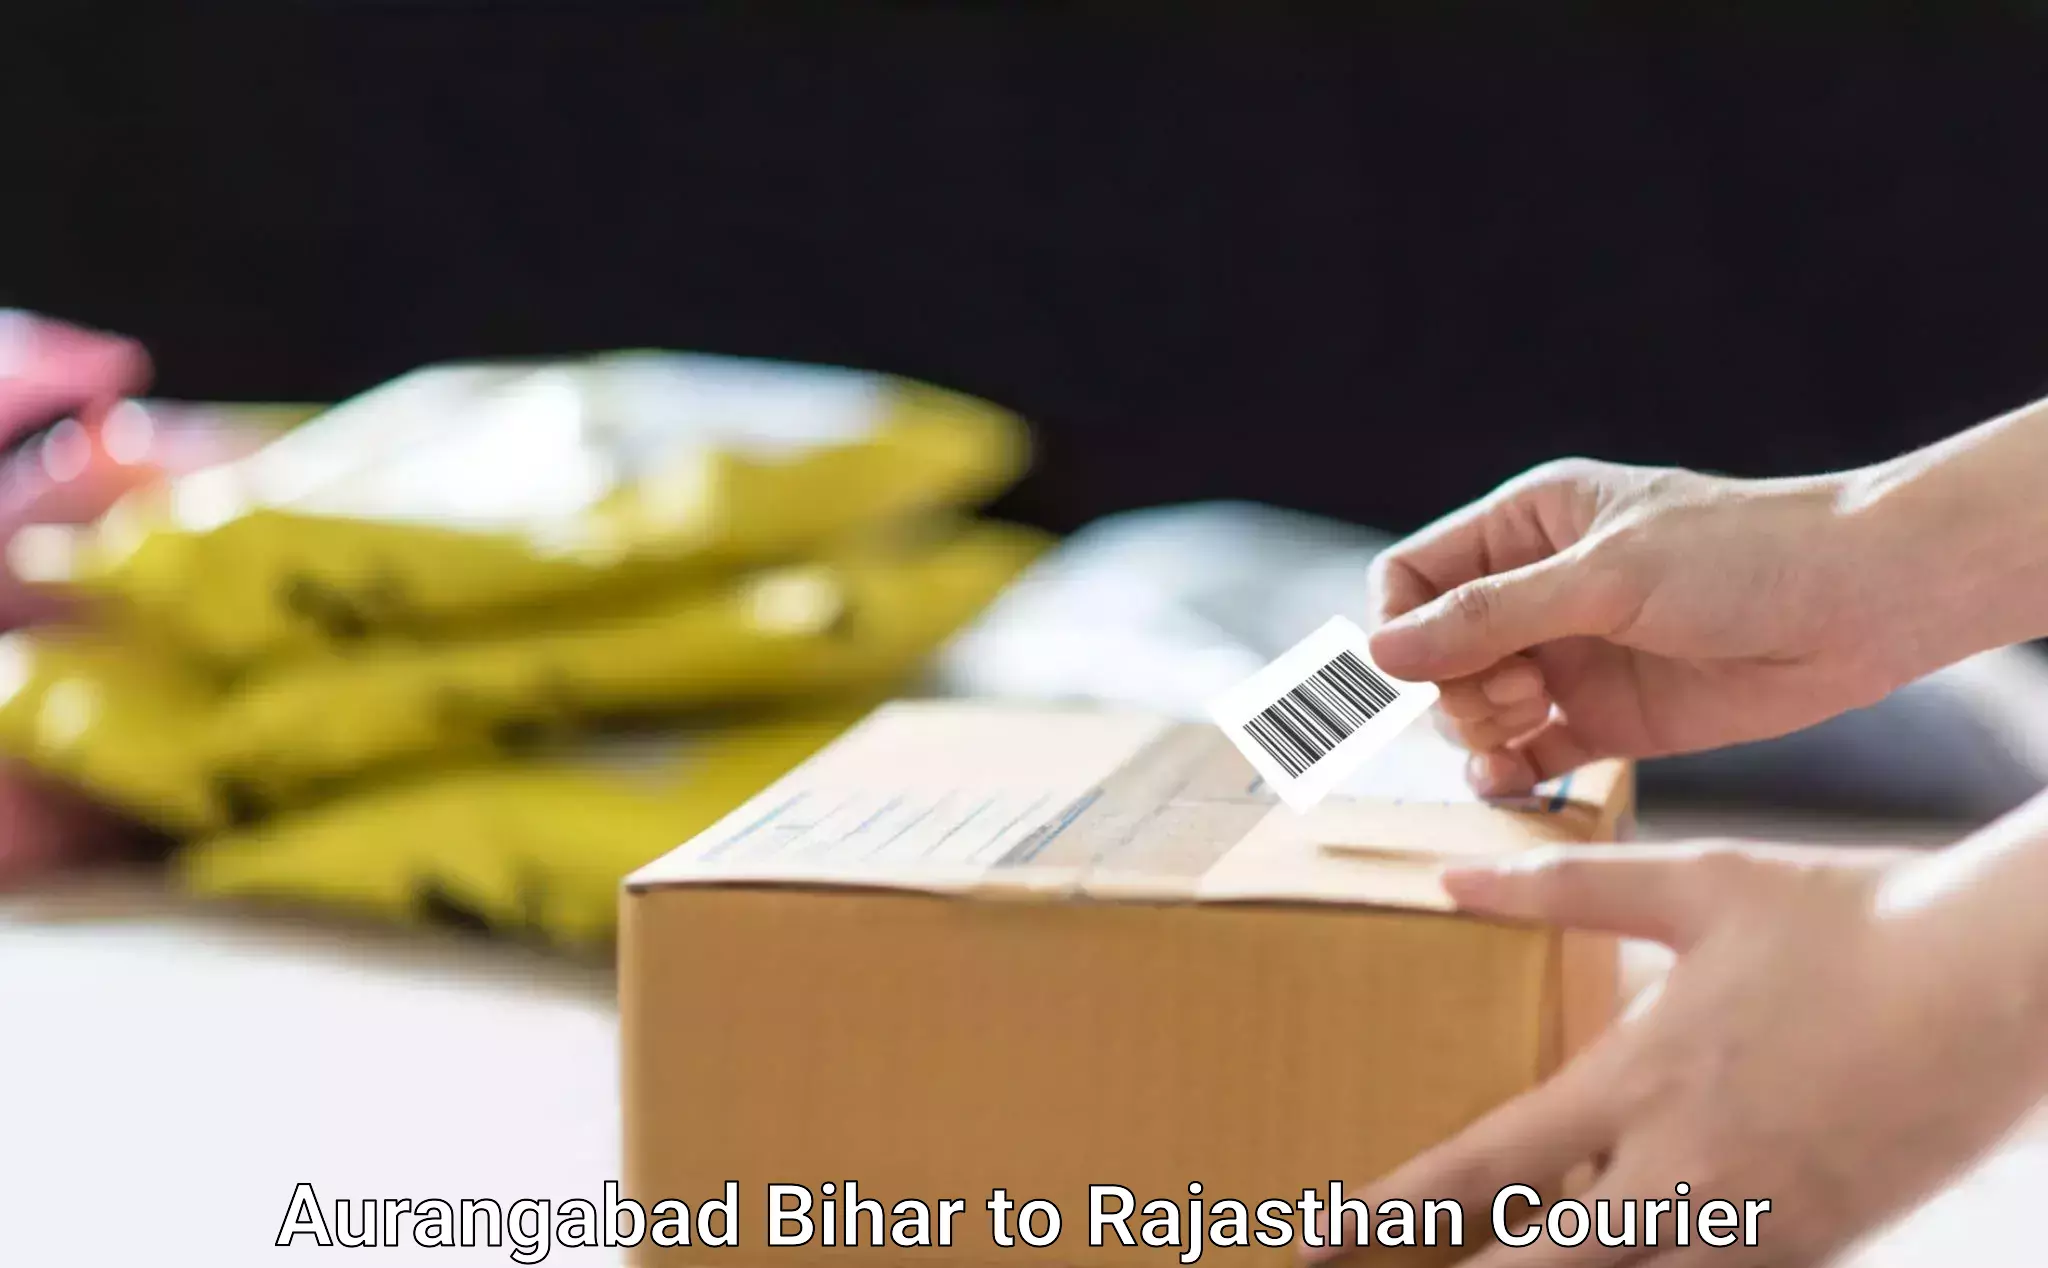 Furniture moving experts Aurangabad Bihar to Rajasthan